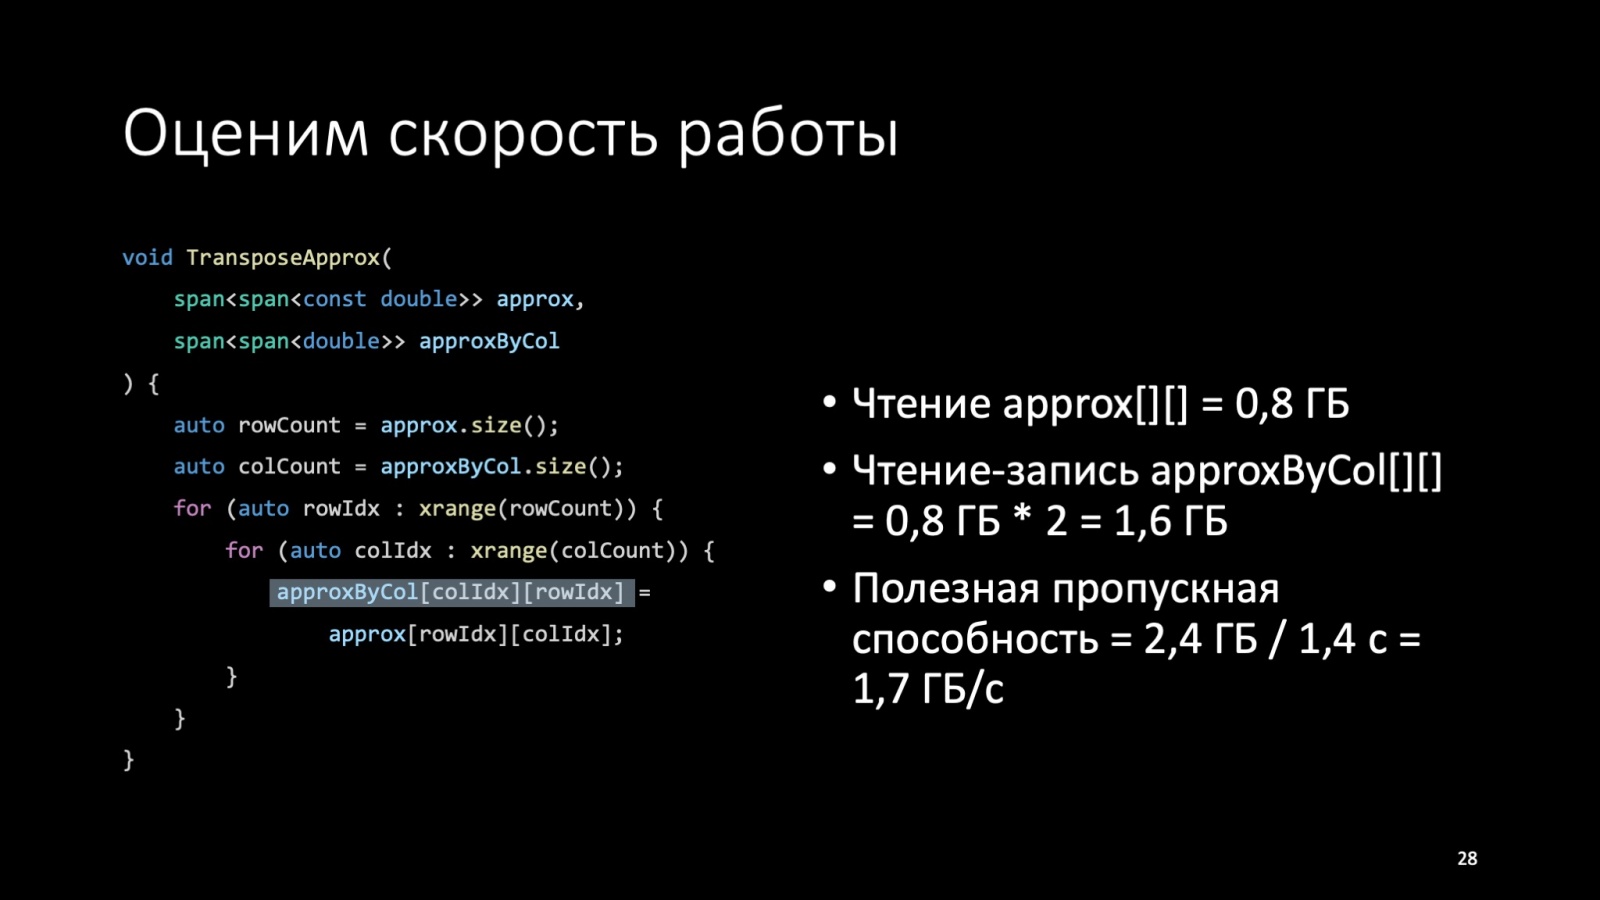 Оптимизация C++: совмещаем скорость и высокий уровень. Доклад Яндекса - 29